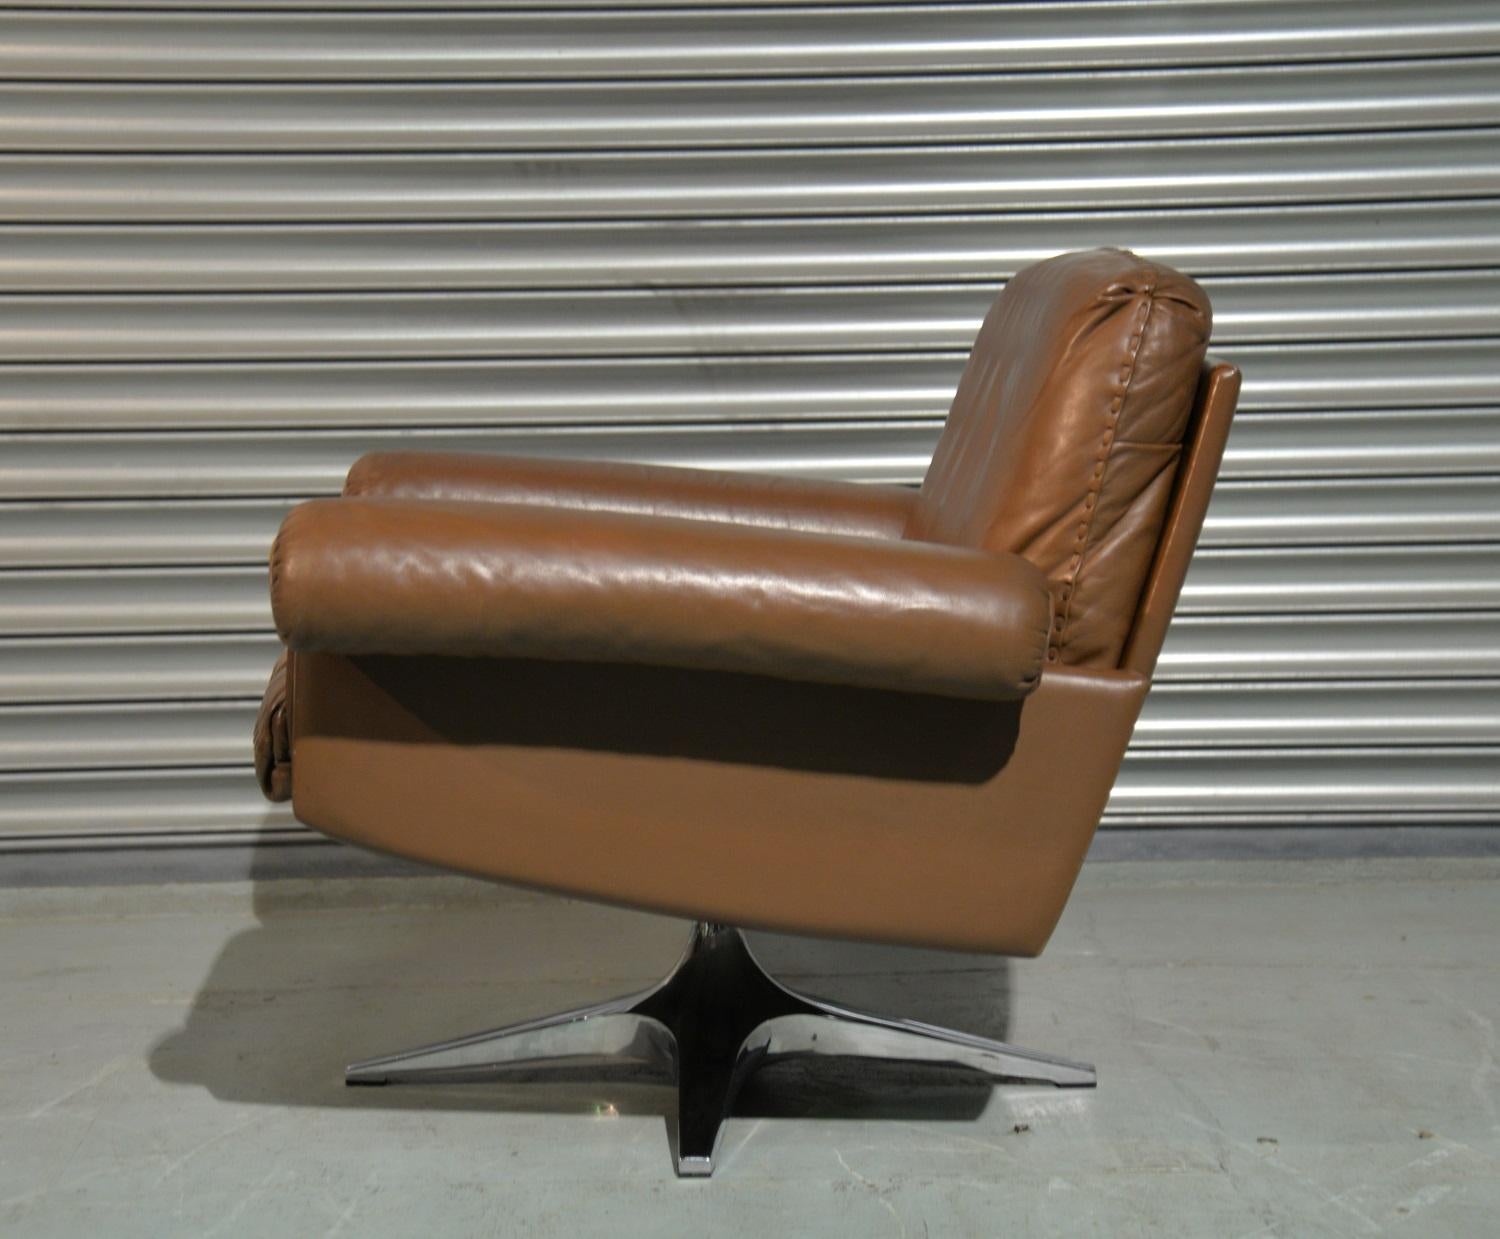 1970s armchair